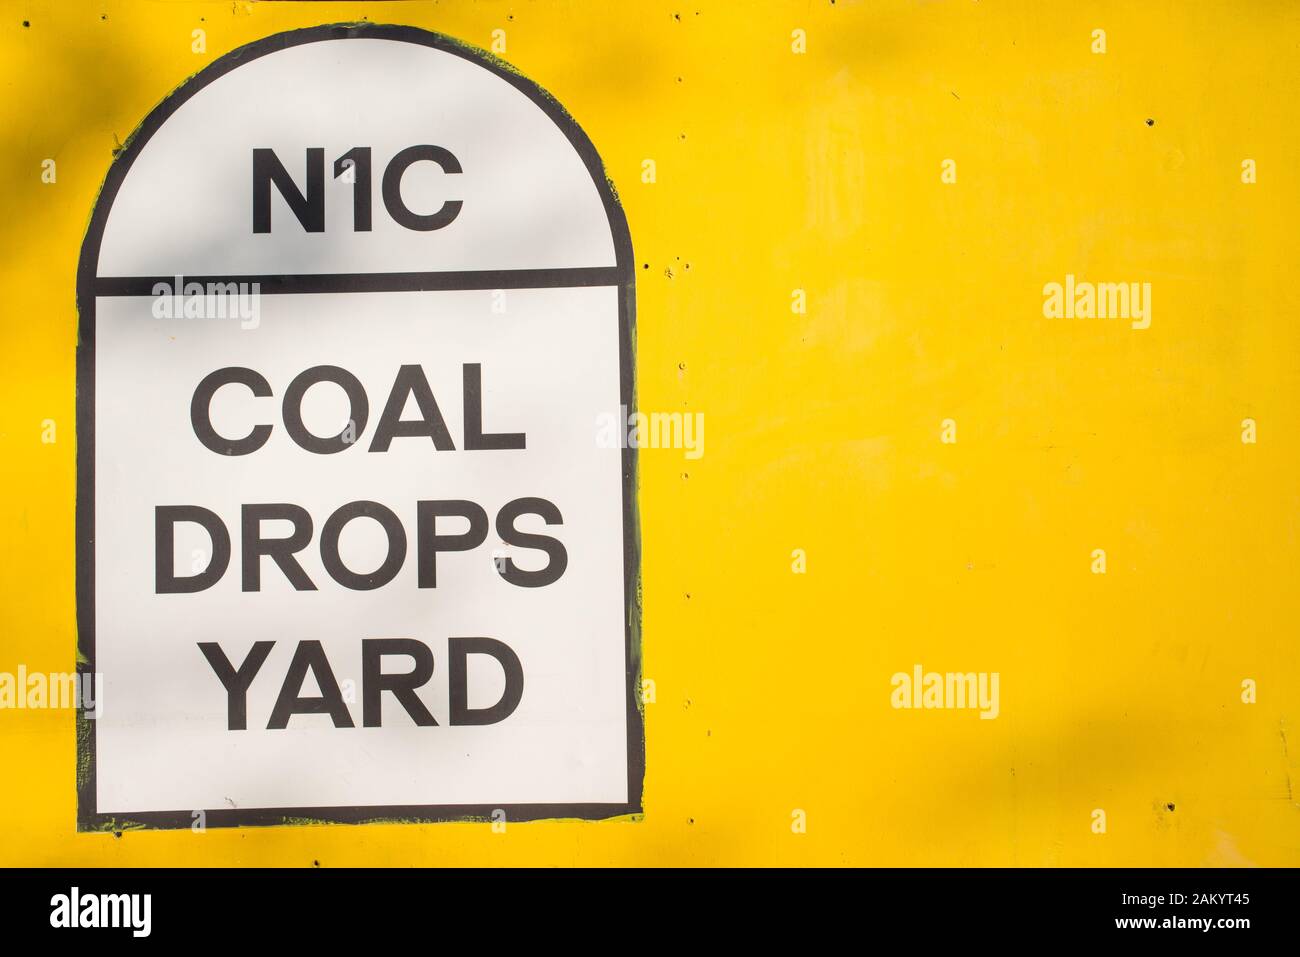 N1C, le charbon tombe Yard signe sur fond jaune. Gouttes de charbon Cour est un nouveau quartier commercial unique à King's Cross, Londres, UK Banque D'Images